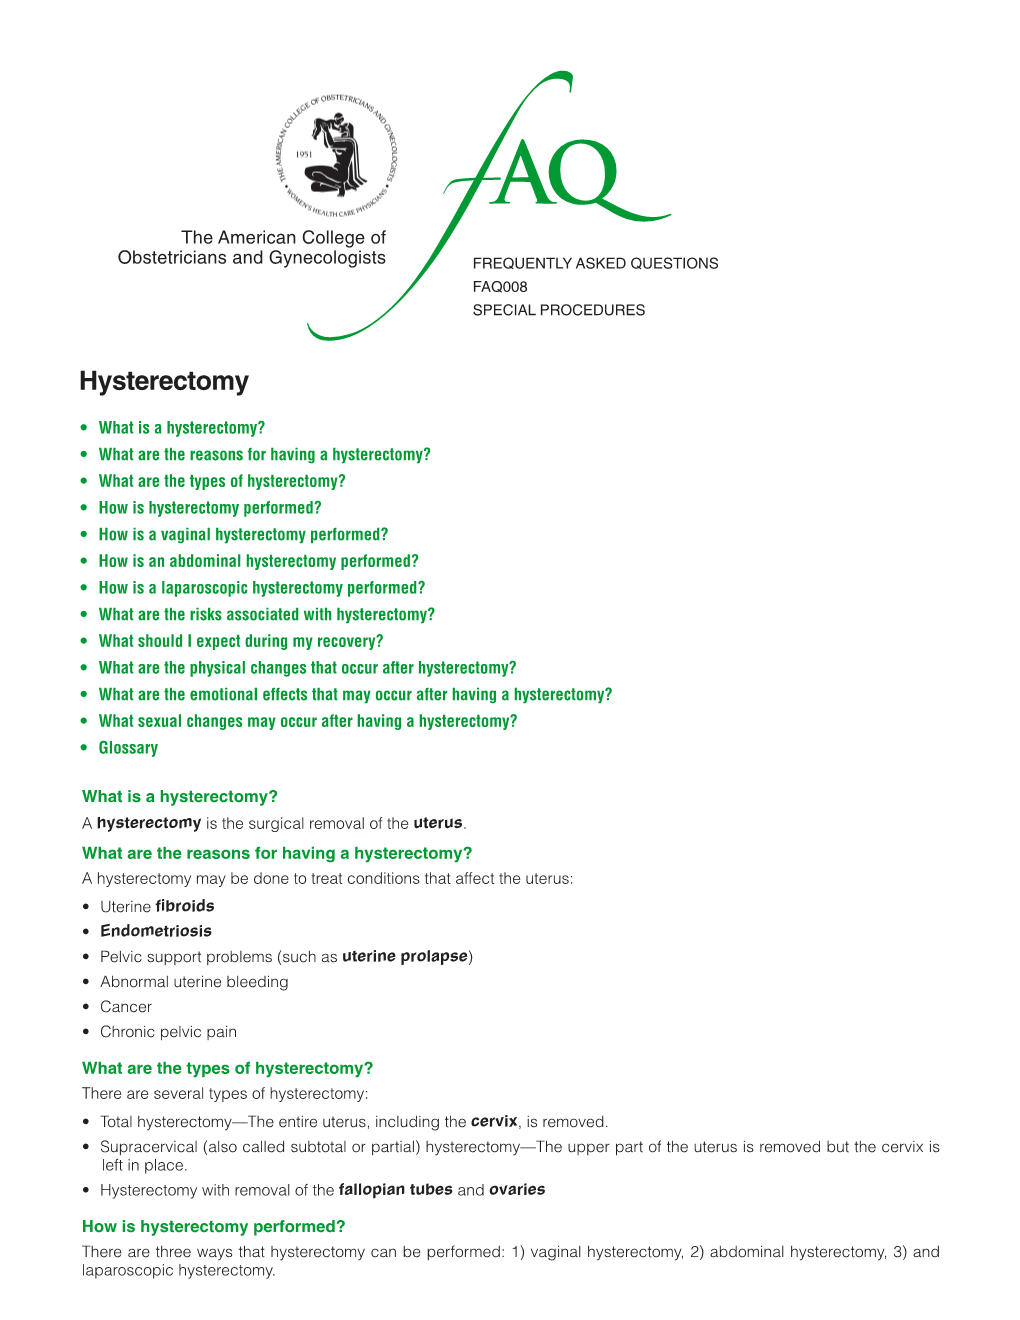 FAQ008 -- Hysterectomy